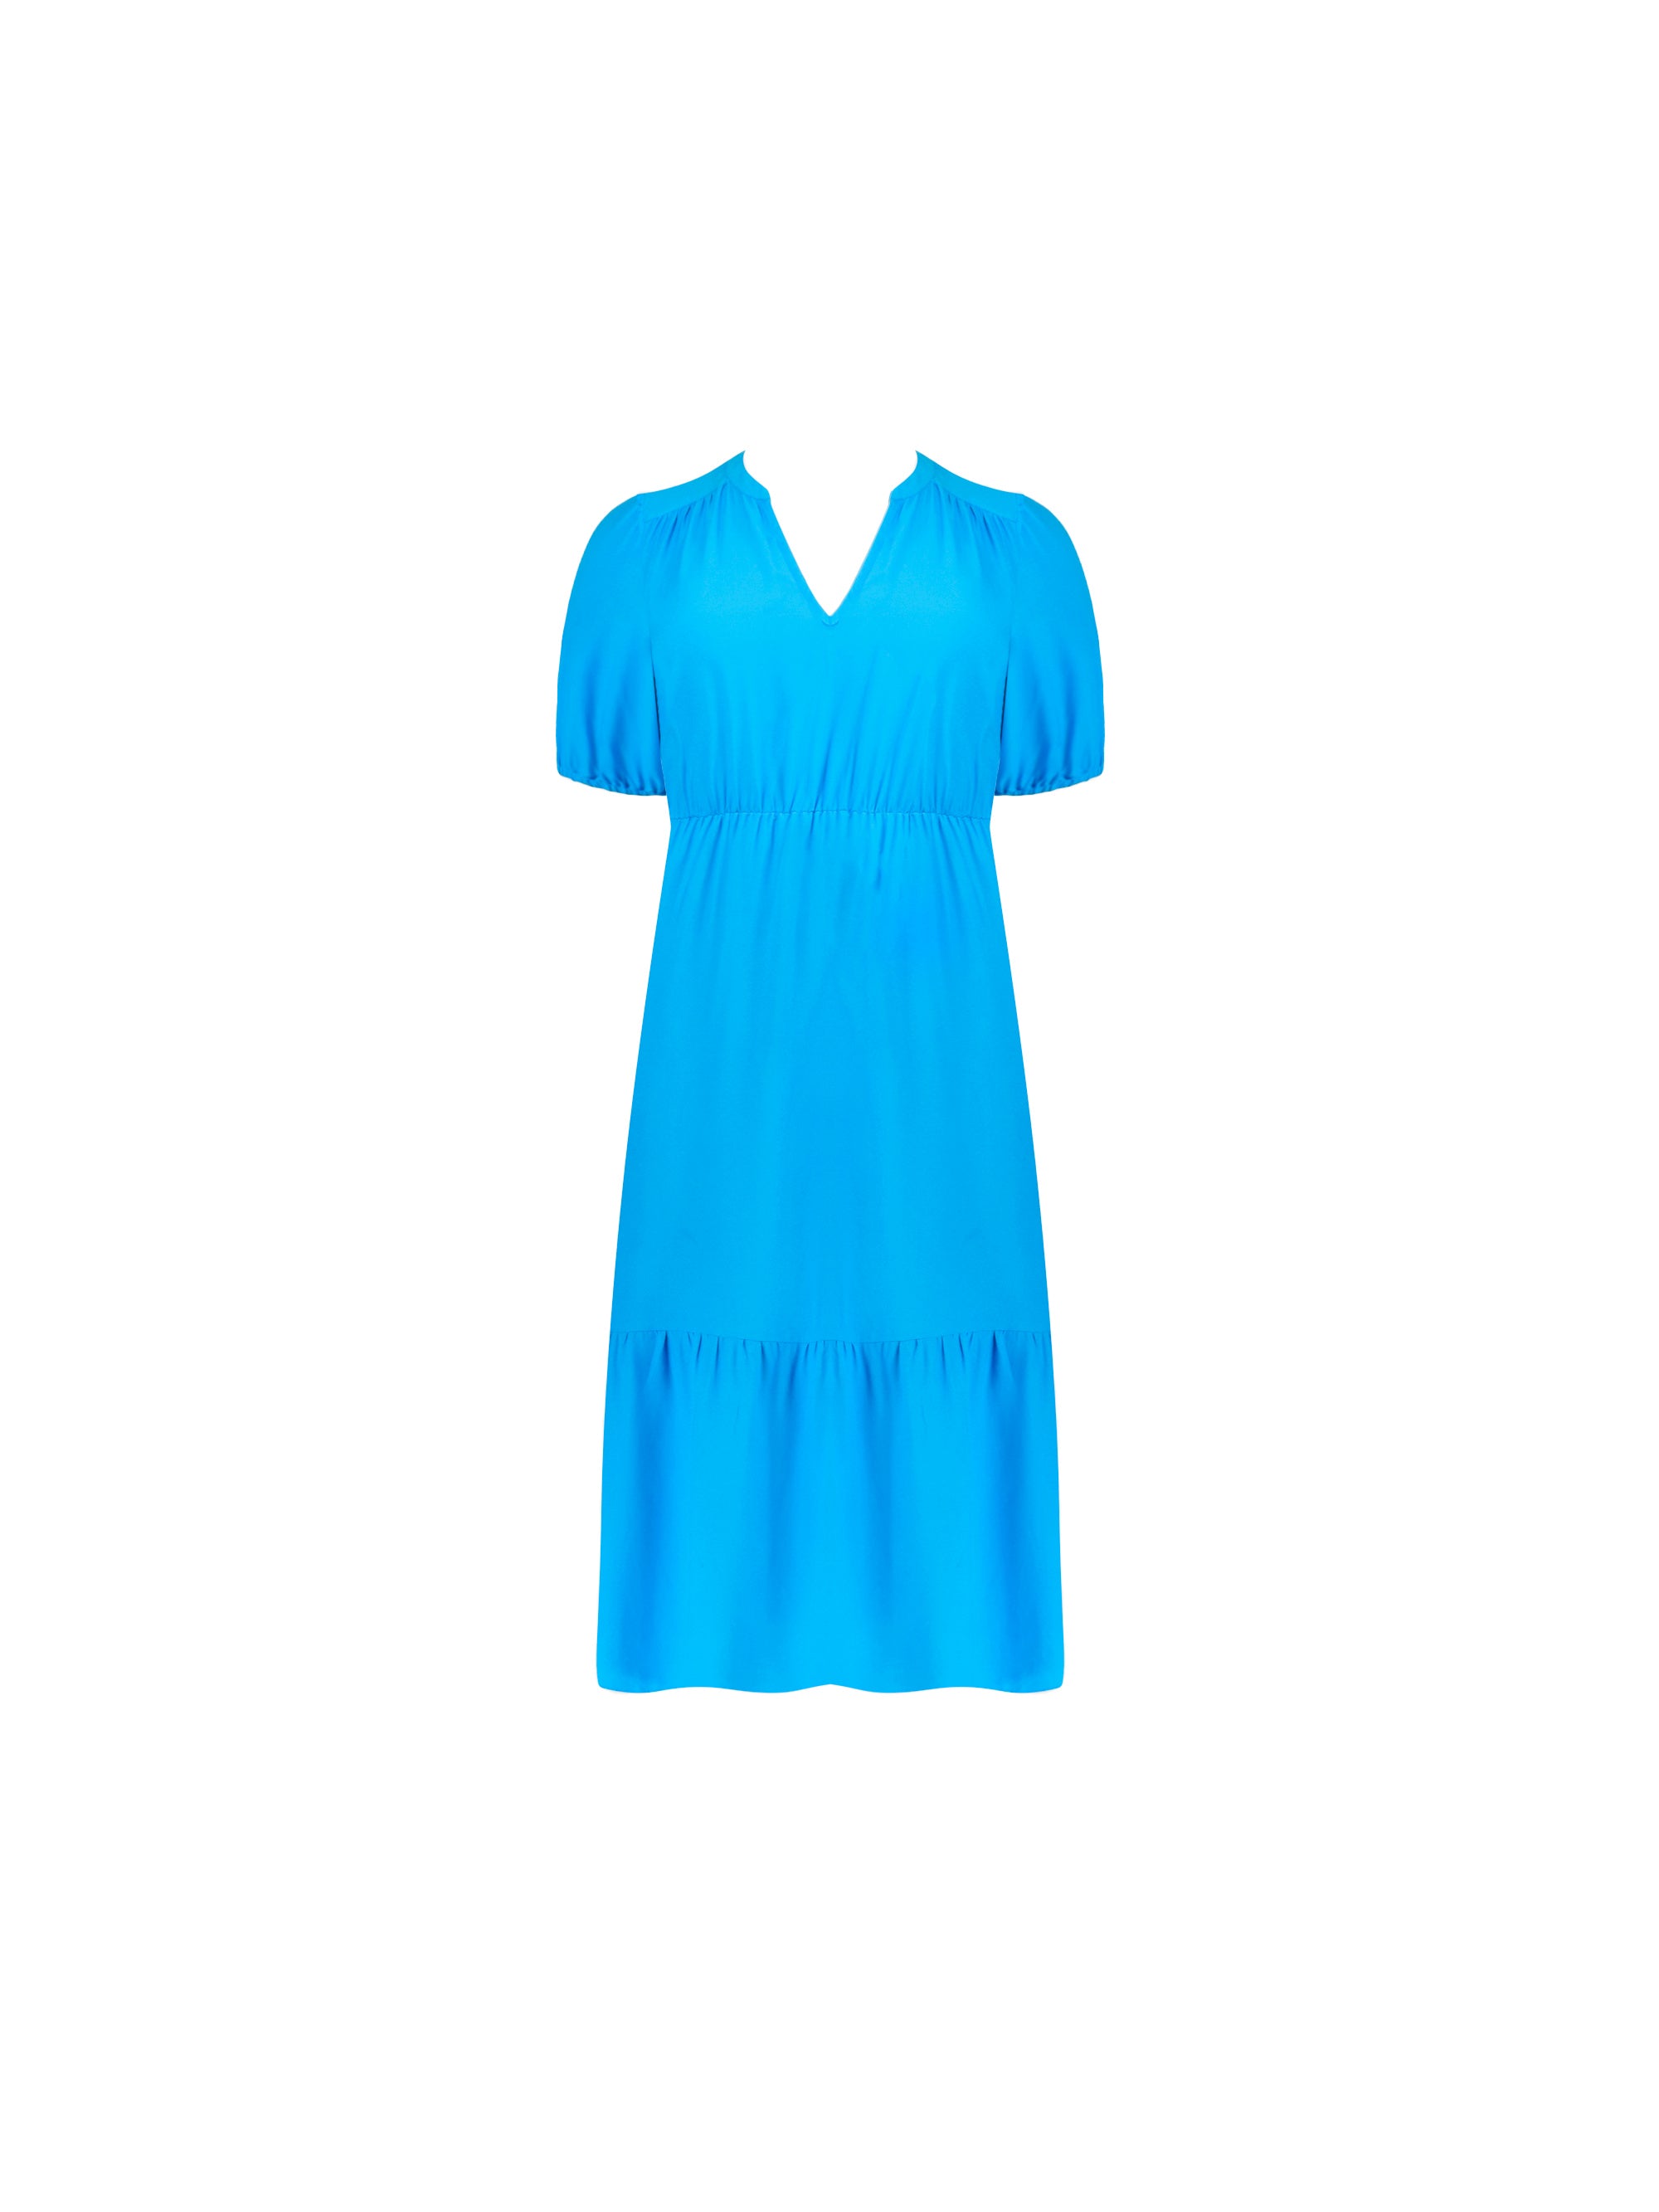 Blue Tiered Midi Dress